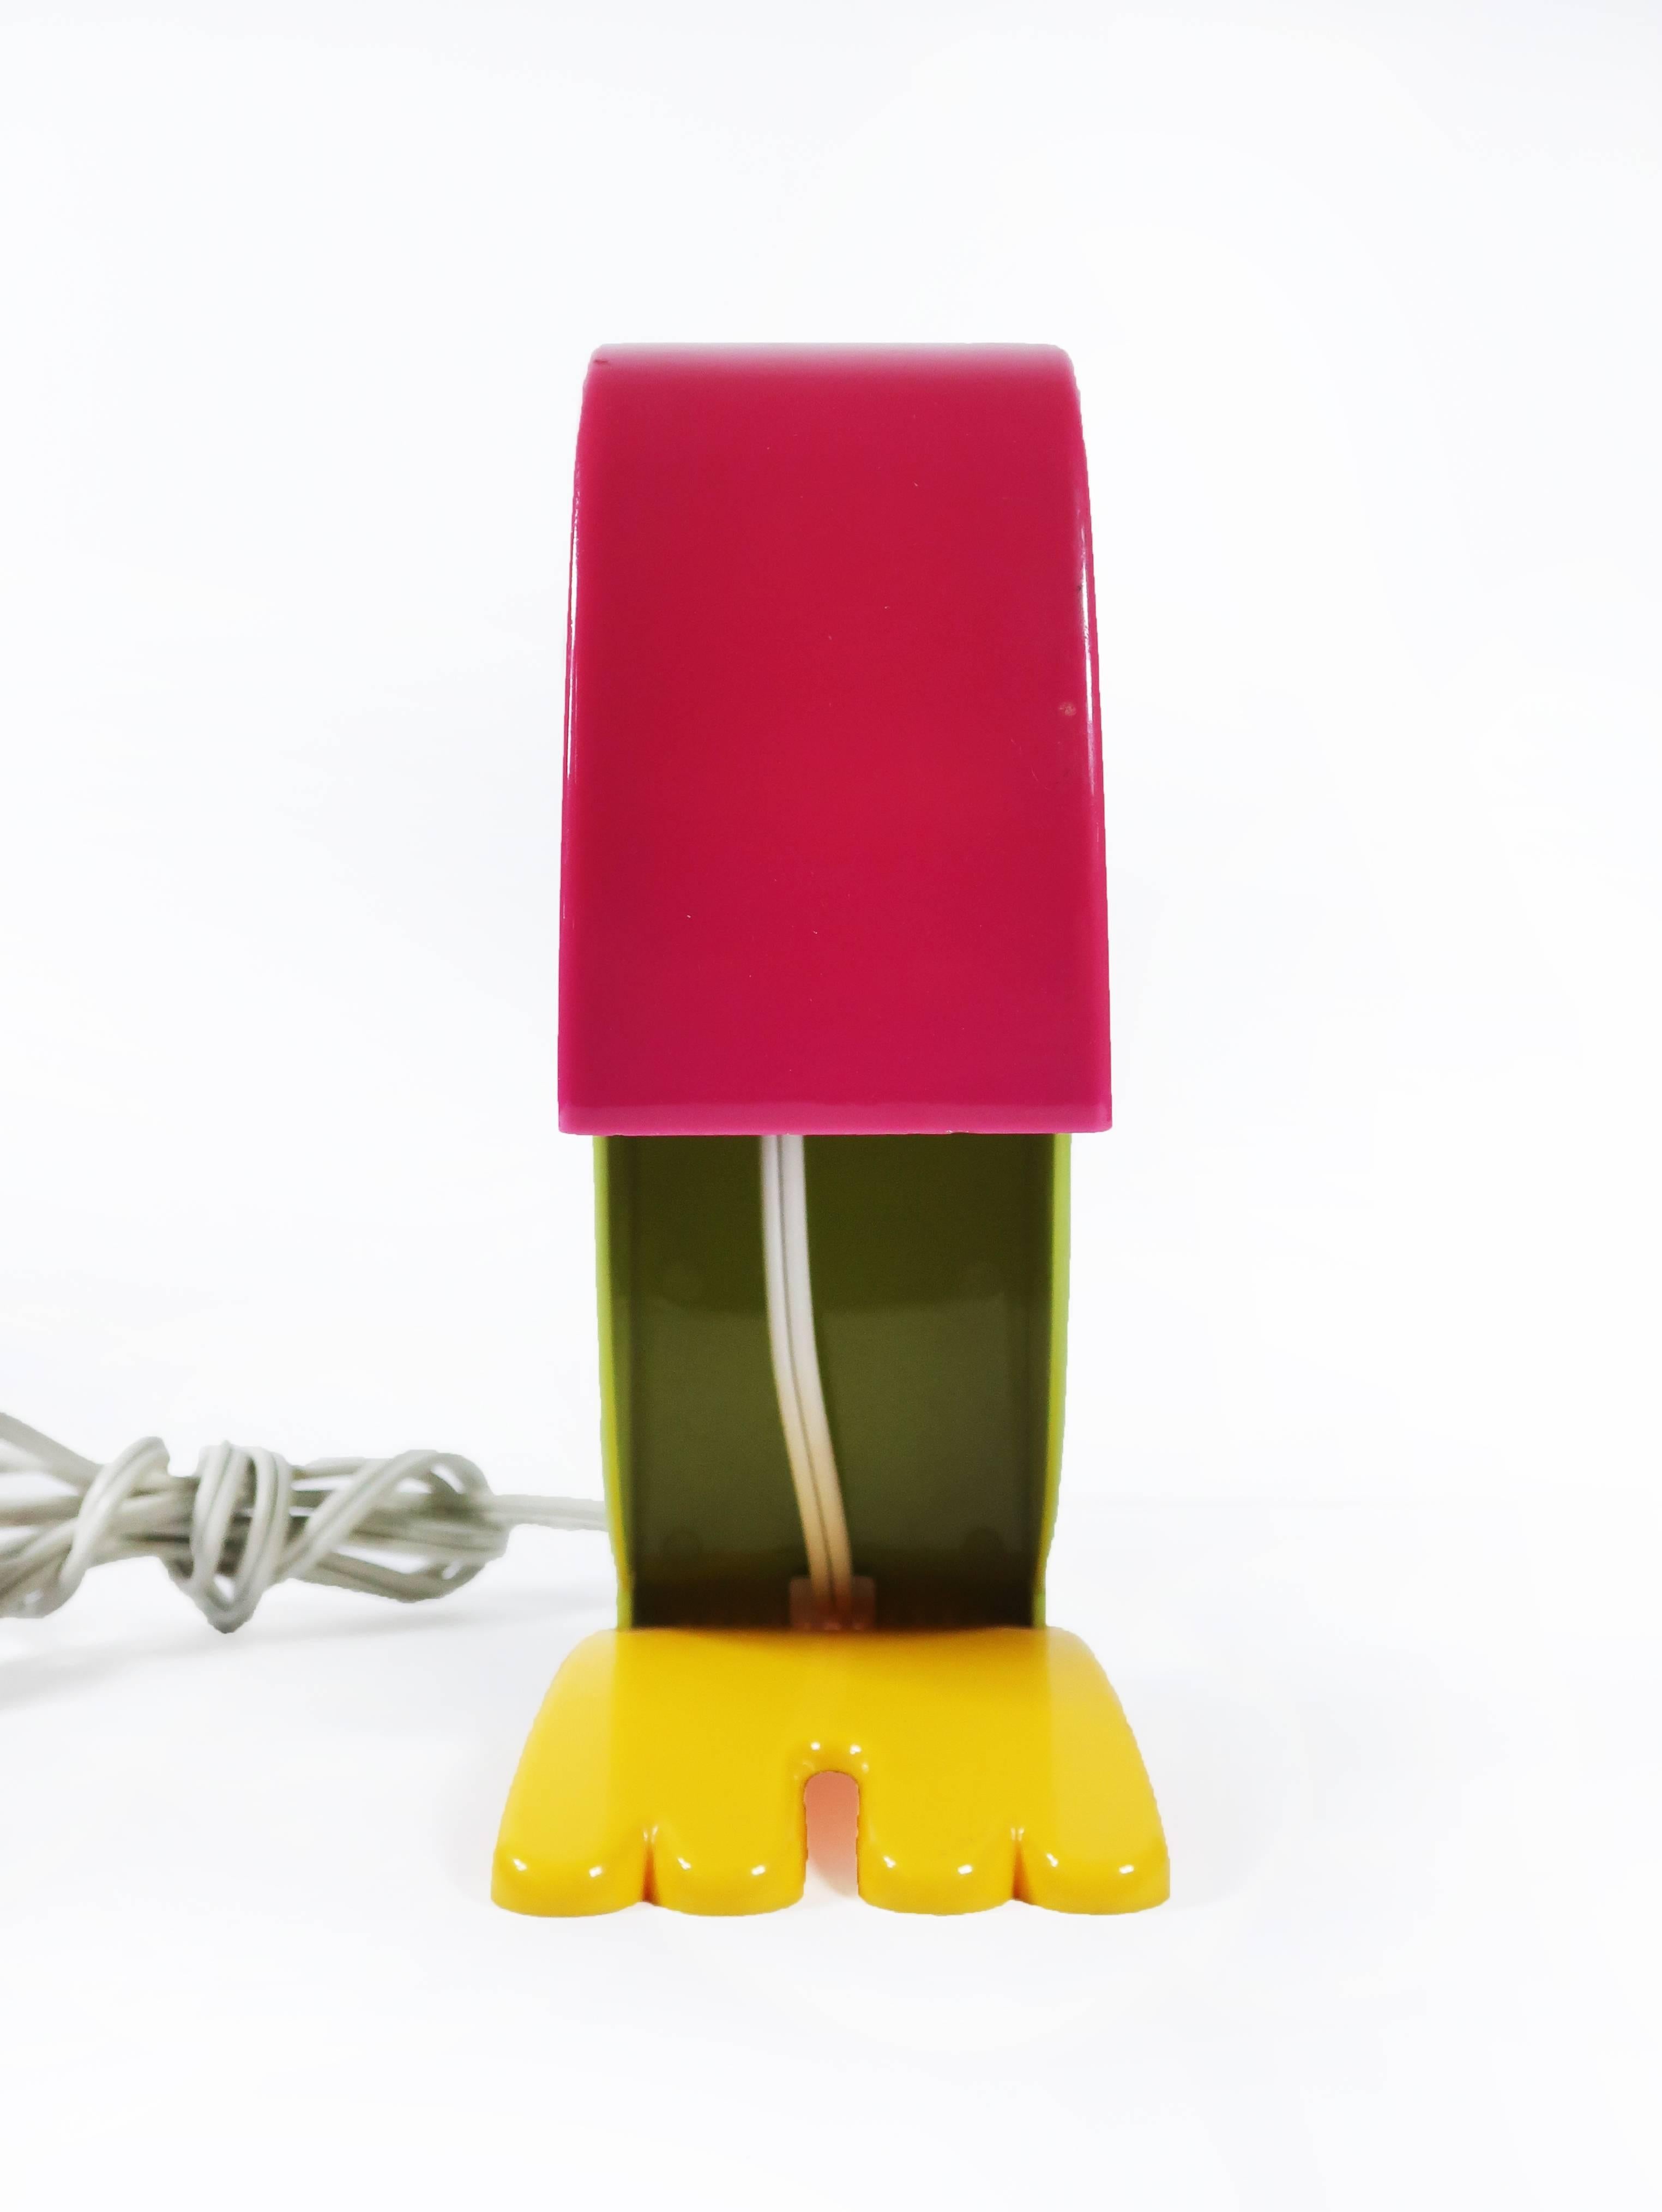 Commercialisée en 1968:: cette lampe de bureau italienne en plastique moderne:: créée par Steven Sclaroff pour Old Timer Ferrari de Vérone:: en Italie:: a un corps vert:: un bec orange:: des pieds jaunes et un œil avec une pupille noire. En ouvrant